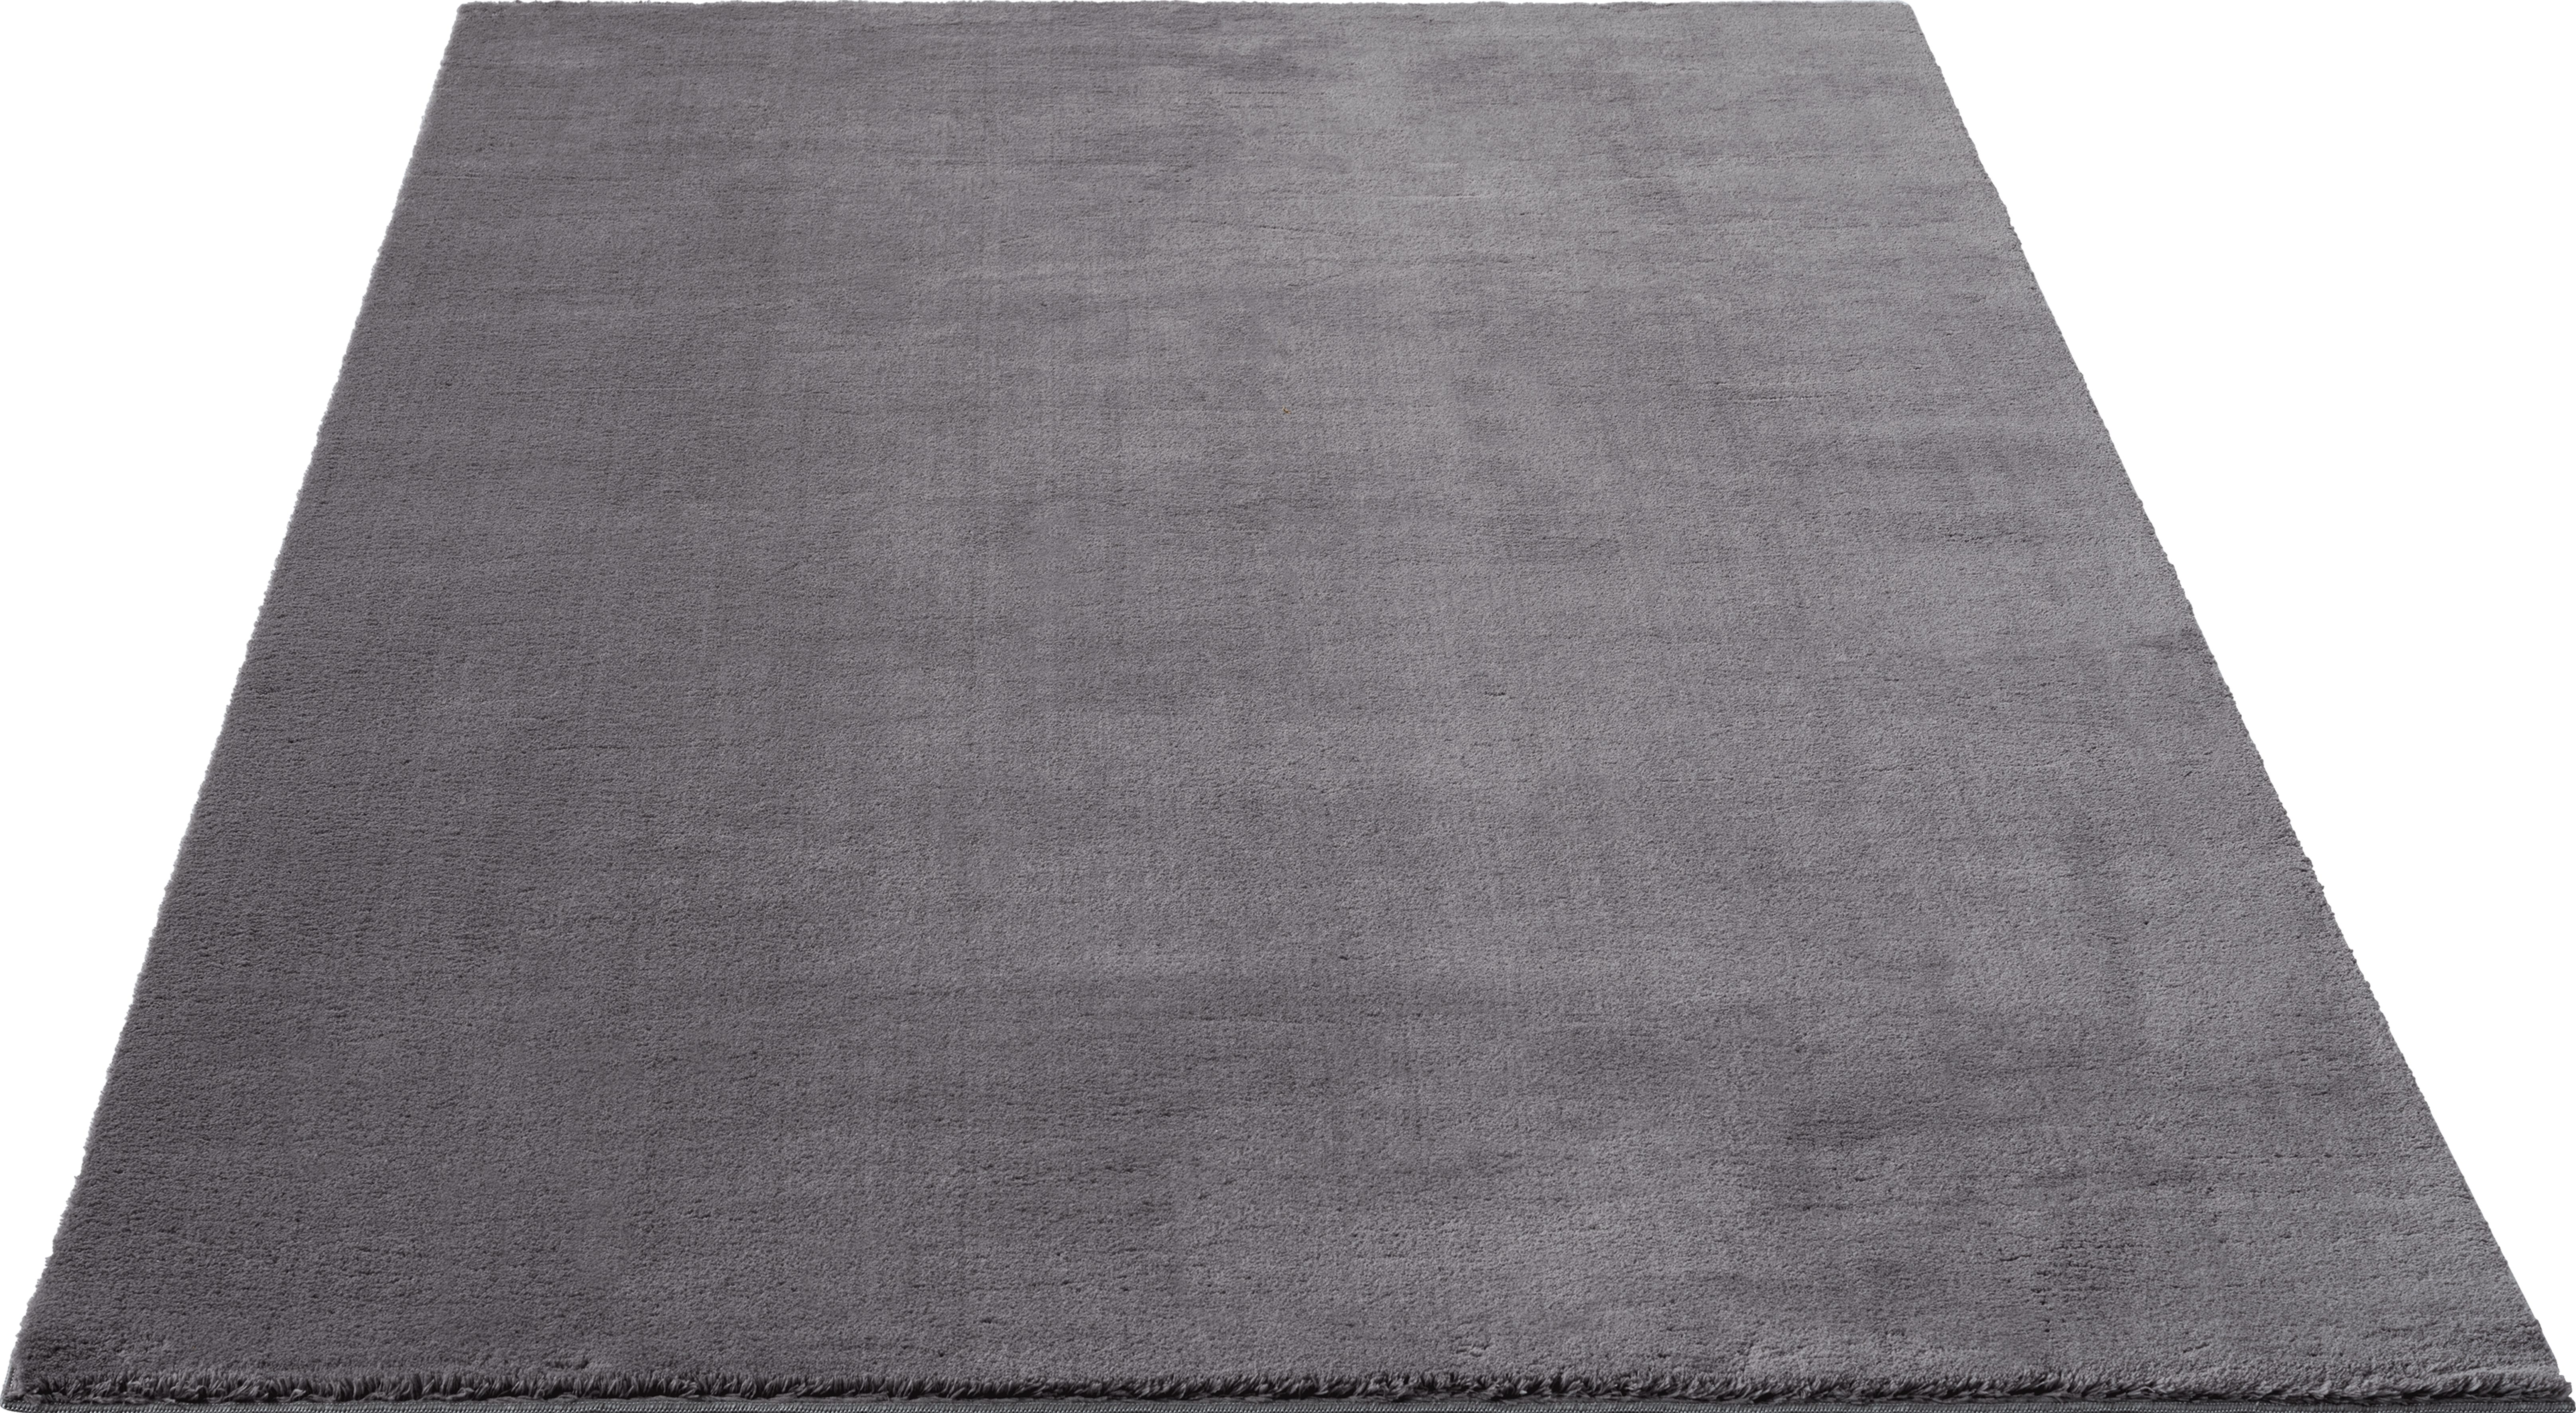 Teppich Arabell, Kunstfellteppich, my home, rechteckig, Höhe: 16 mm, weich und kuschelig, Fell Haptik, Anti-Rutsch-Unterseite